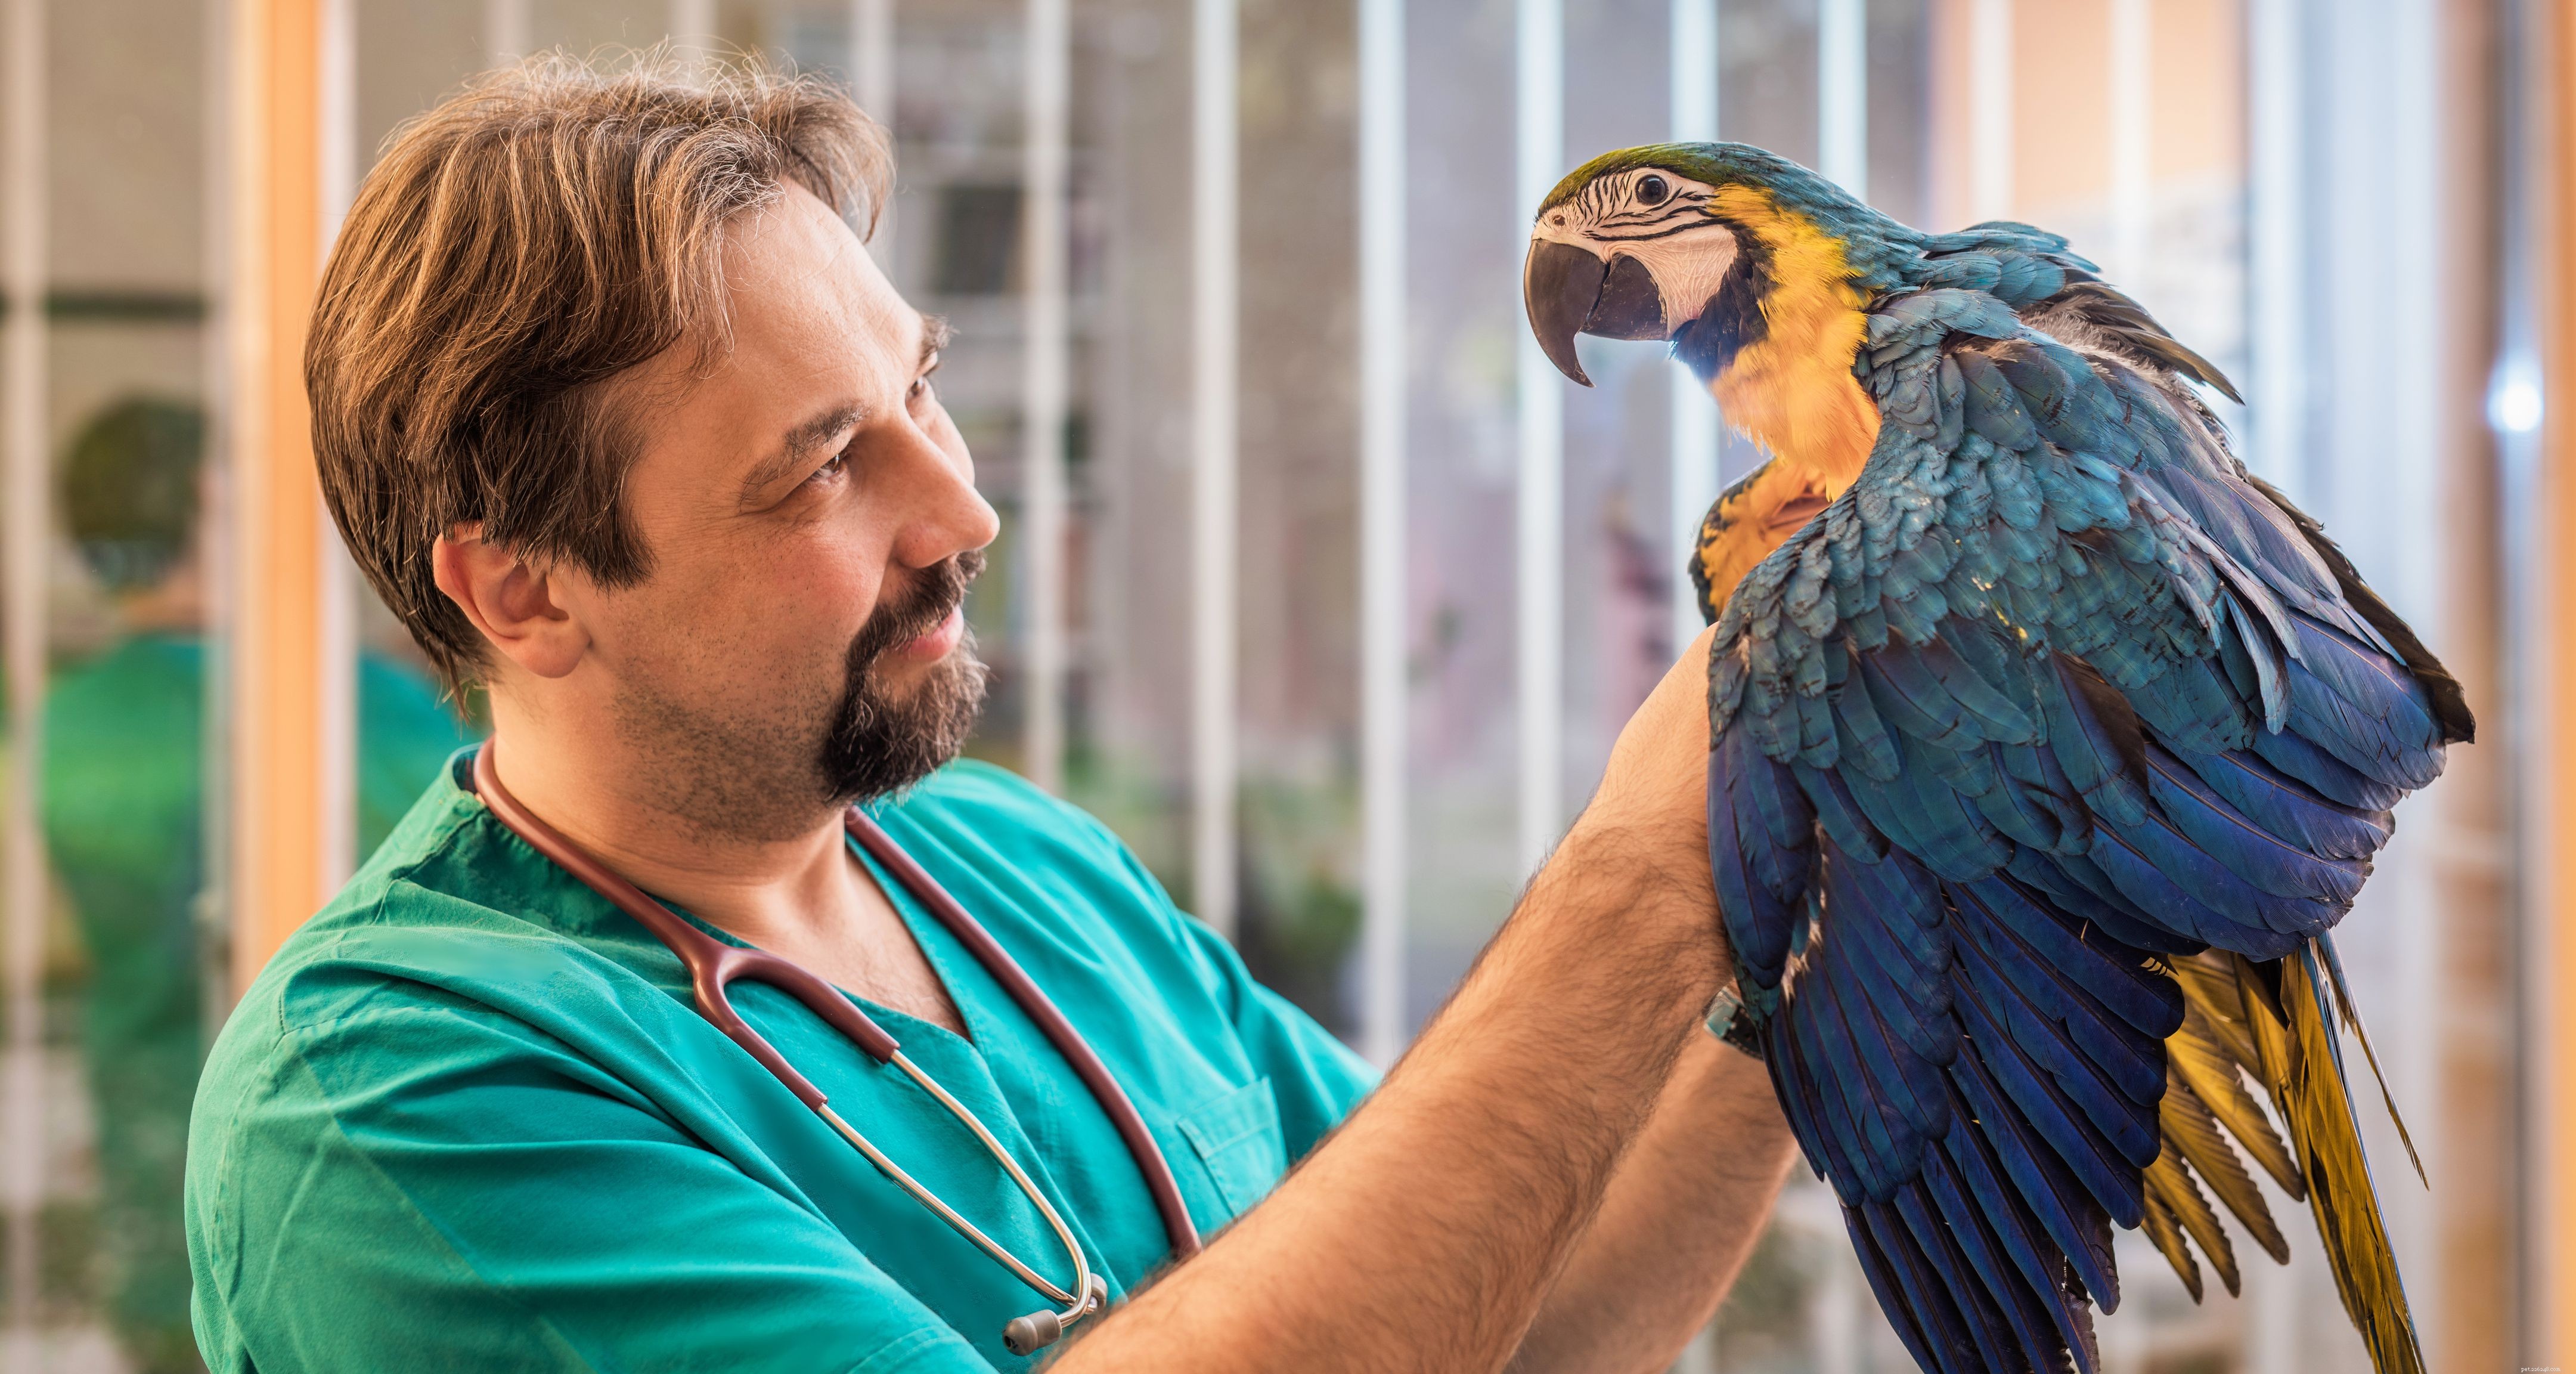 Проблемы со здоровьем птиц, о которых следует знать